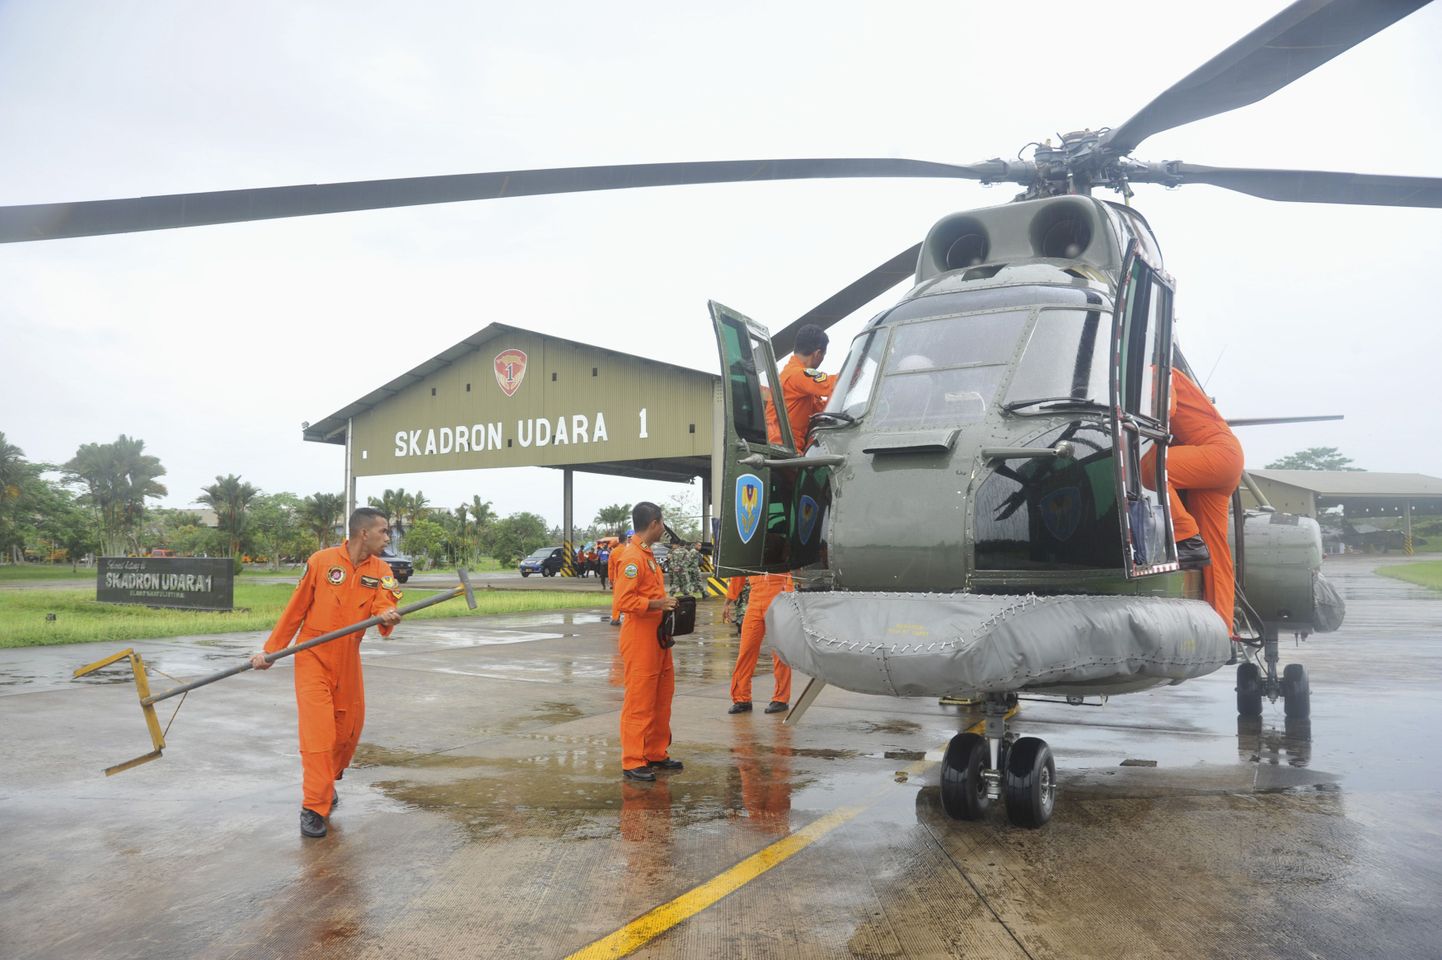 Indoneesia õhujõudude helikopter Puma valmistub lendama reisilennuki arvatavasse hukkumispiirkonda.